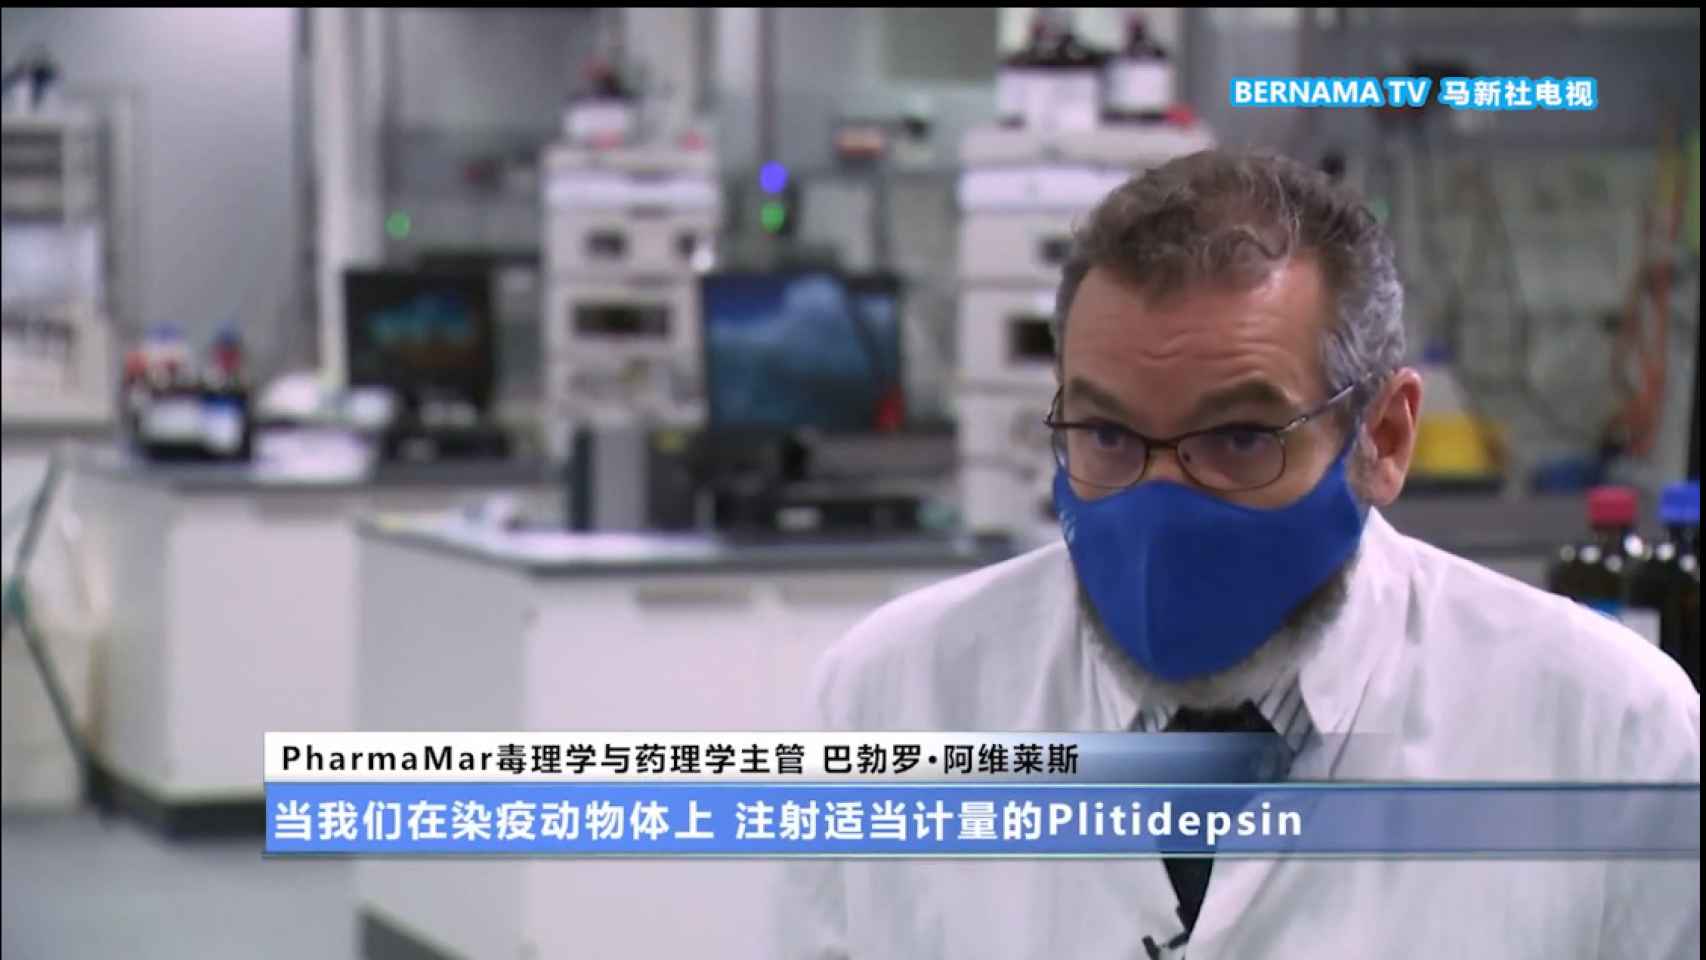 Medios chinos entrevistando a los responsables de PharmaMar